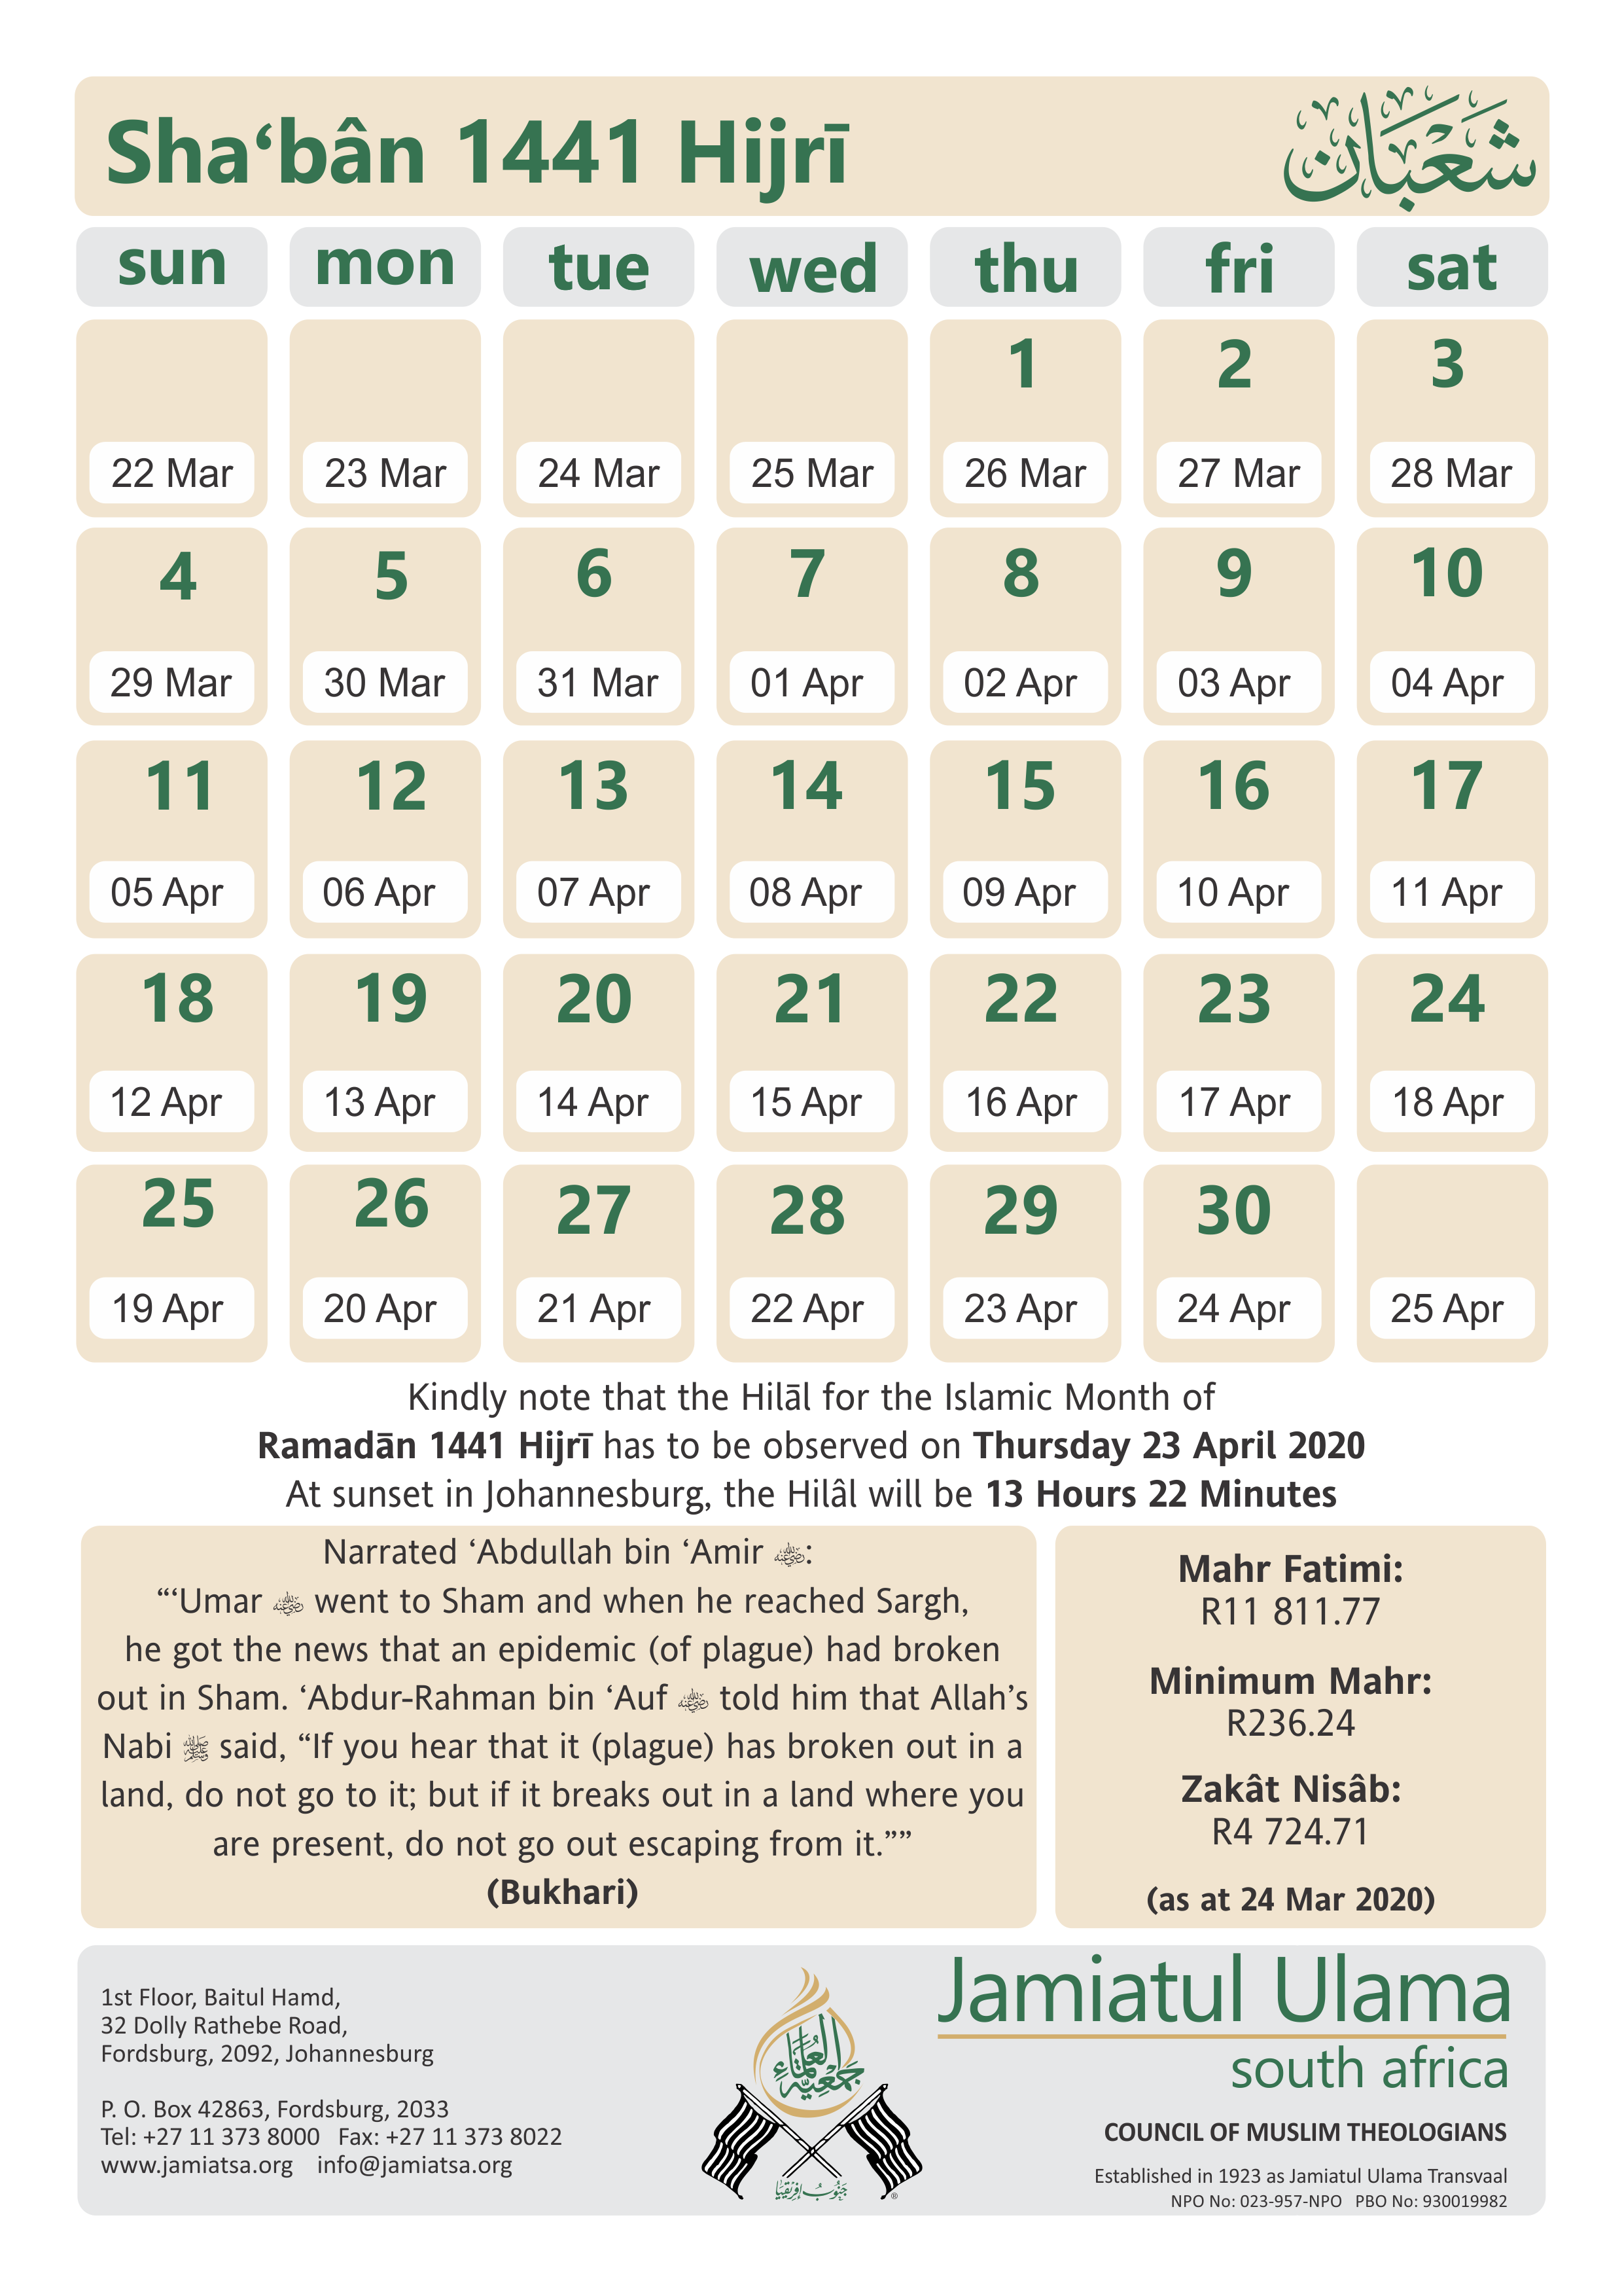 Islamic calendar 2017 shia atilachoice